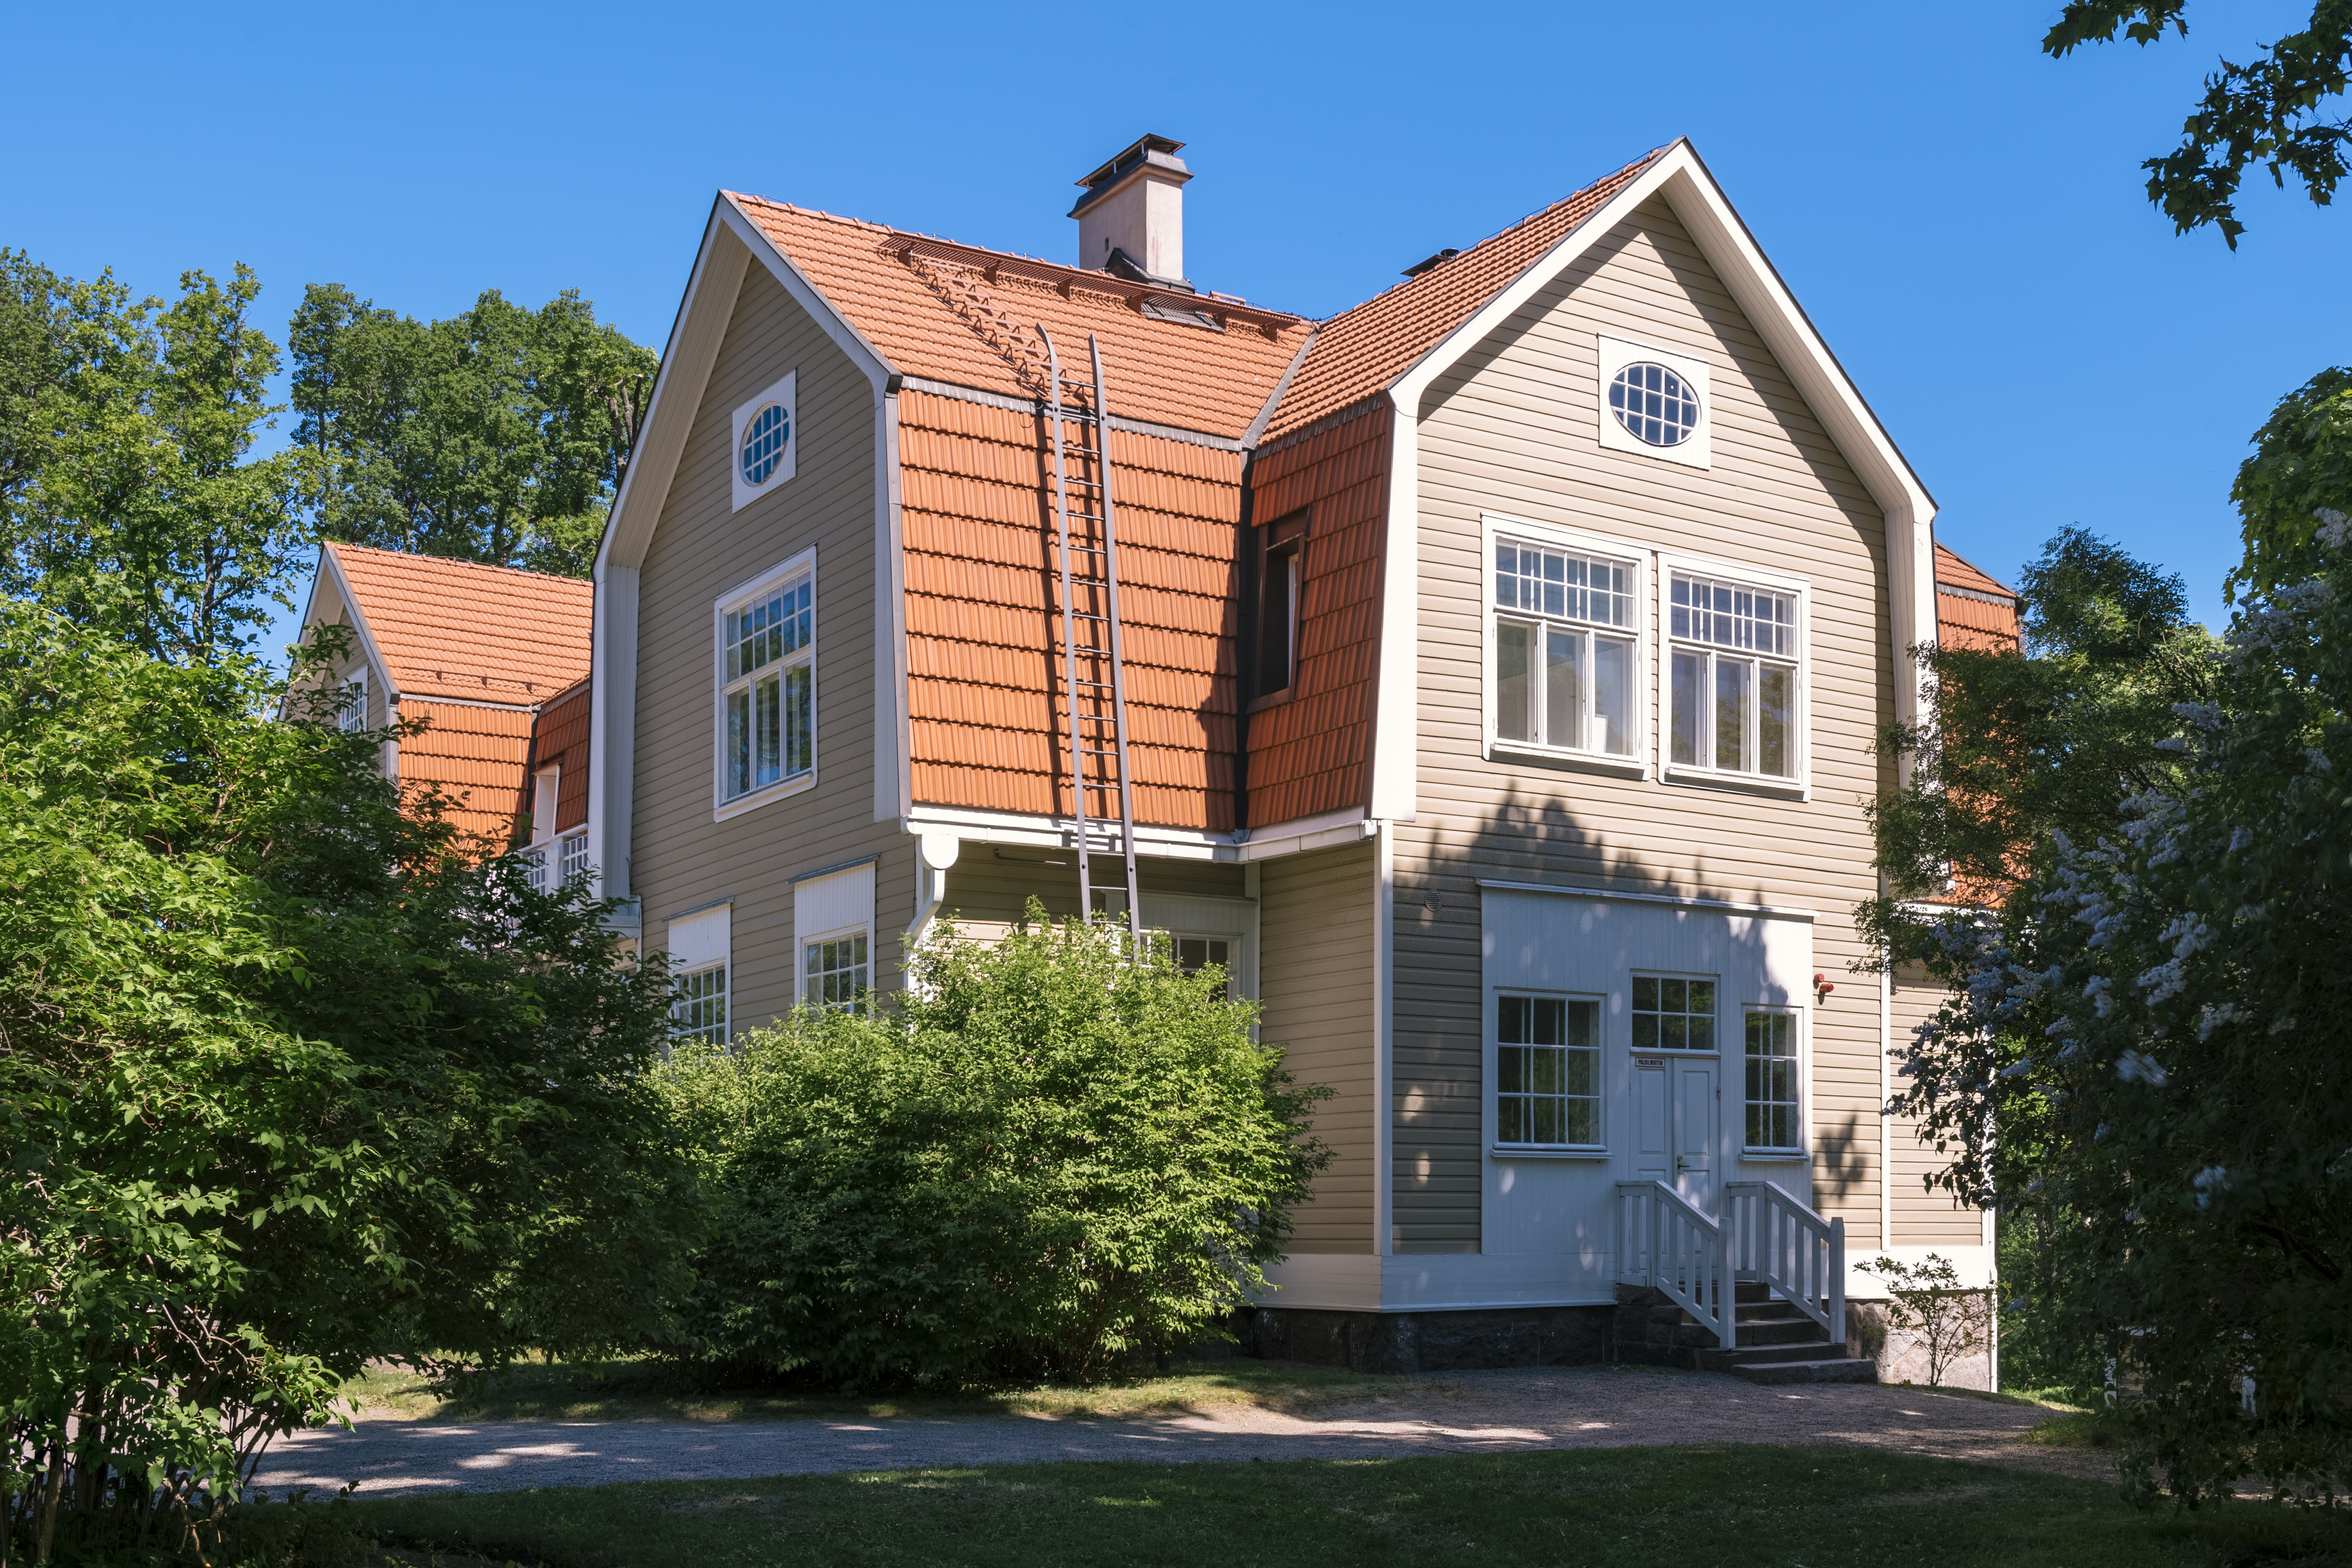 Håkansböle manor in Vantaa in 2018